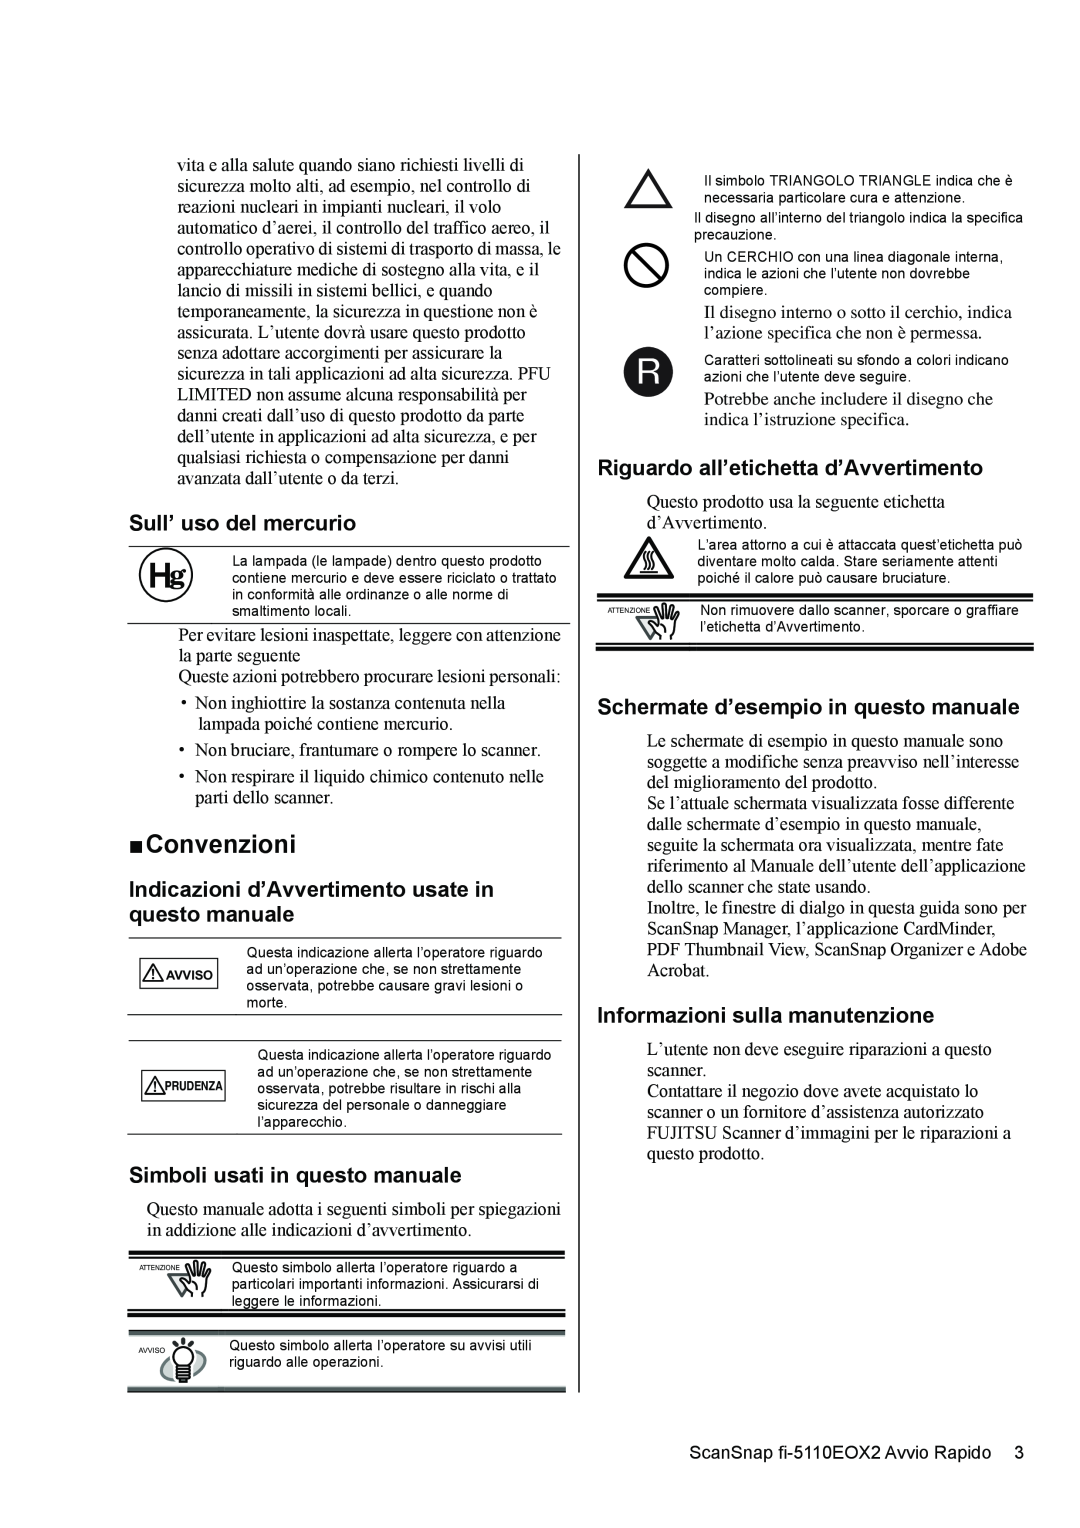 Fujitsu fi-5110EOX2 „ Convenzioni, Sull’ uso del mercurio, Indicazioni d’Avvertimento usate in questo manuale 